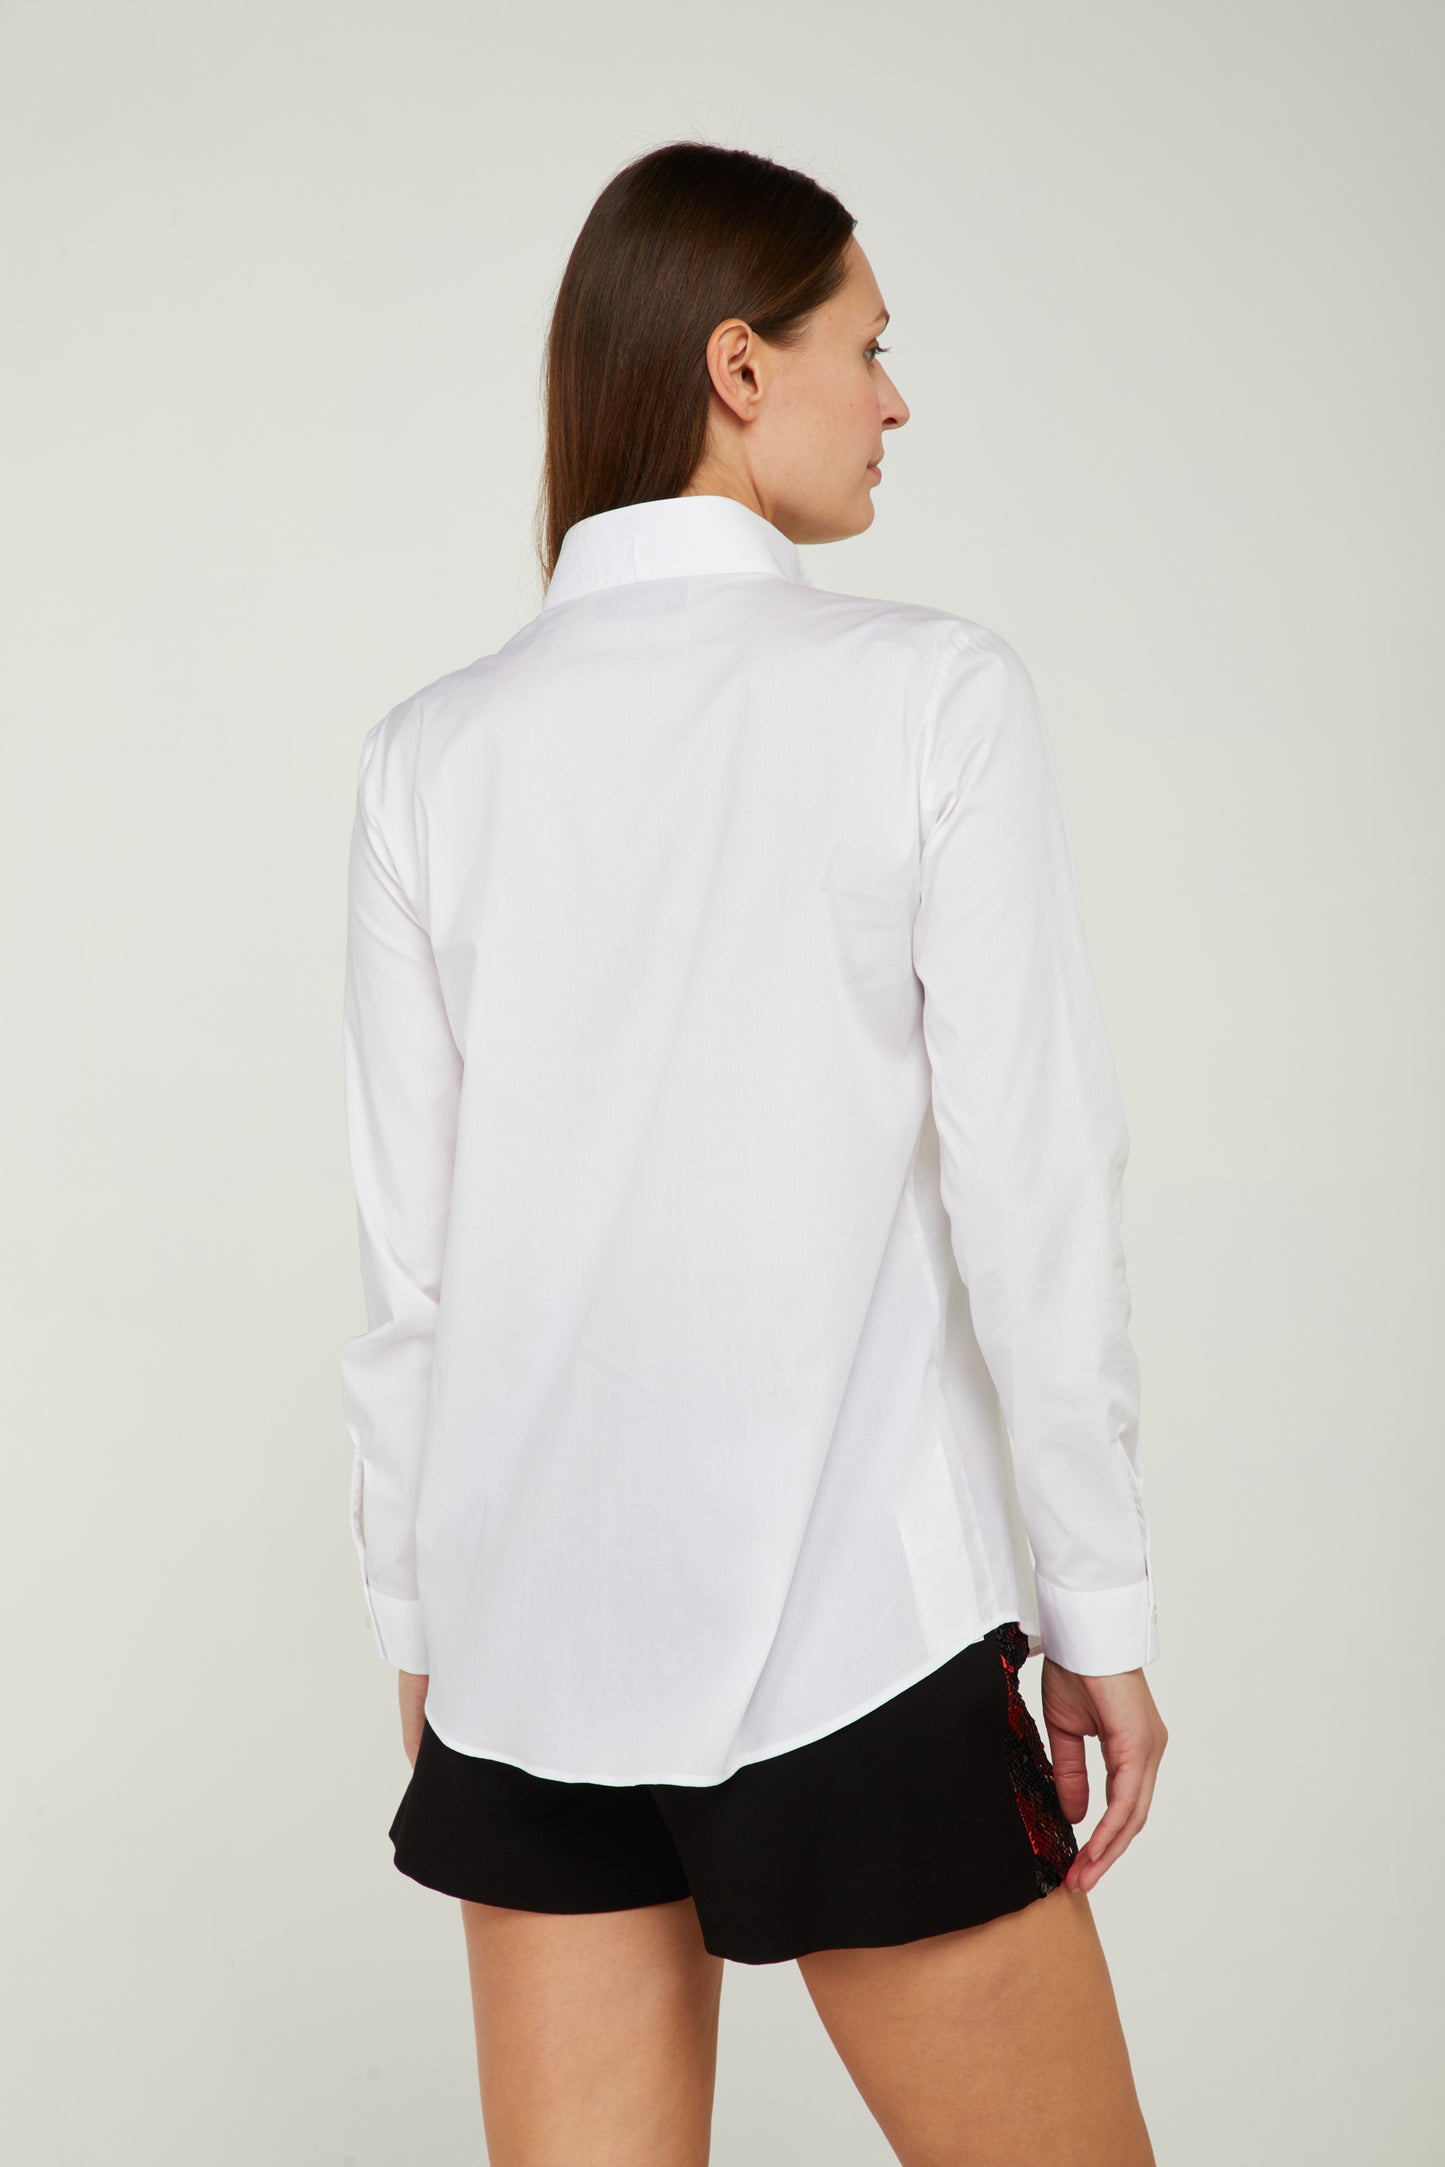 GAELLE White Shirt